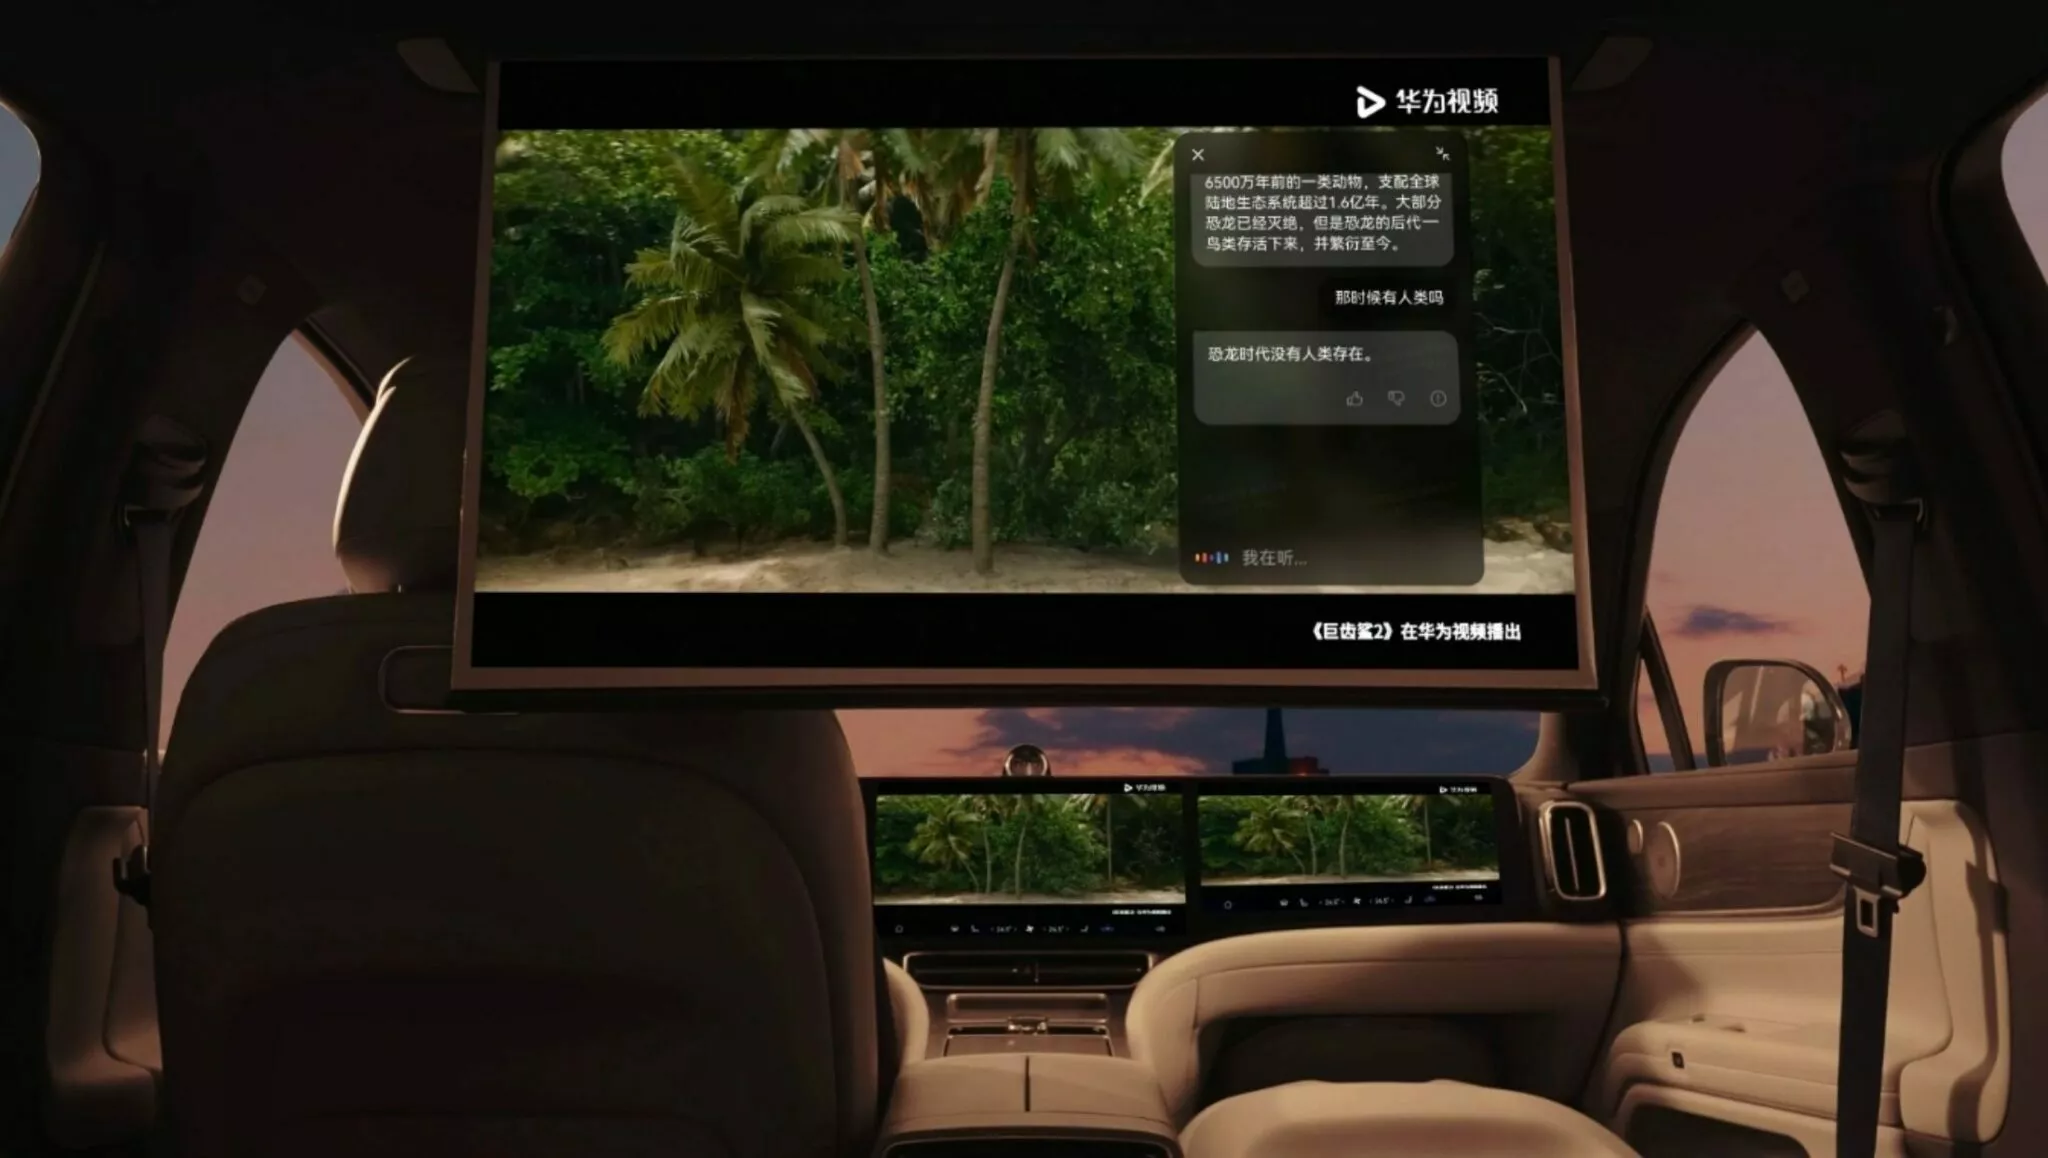 شركة هواوي تكشف عن سيارة SUV كهربائية فاخرة بشاشة سينمائية وقوة 530 حصان 20